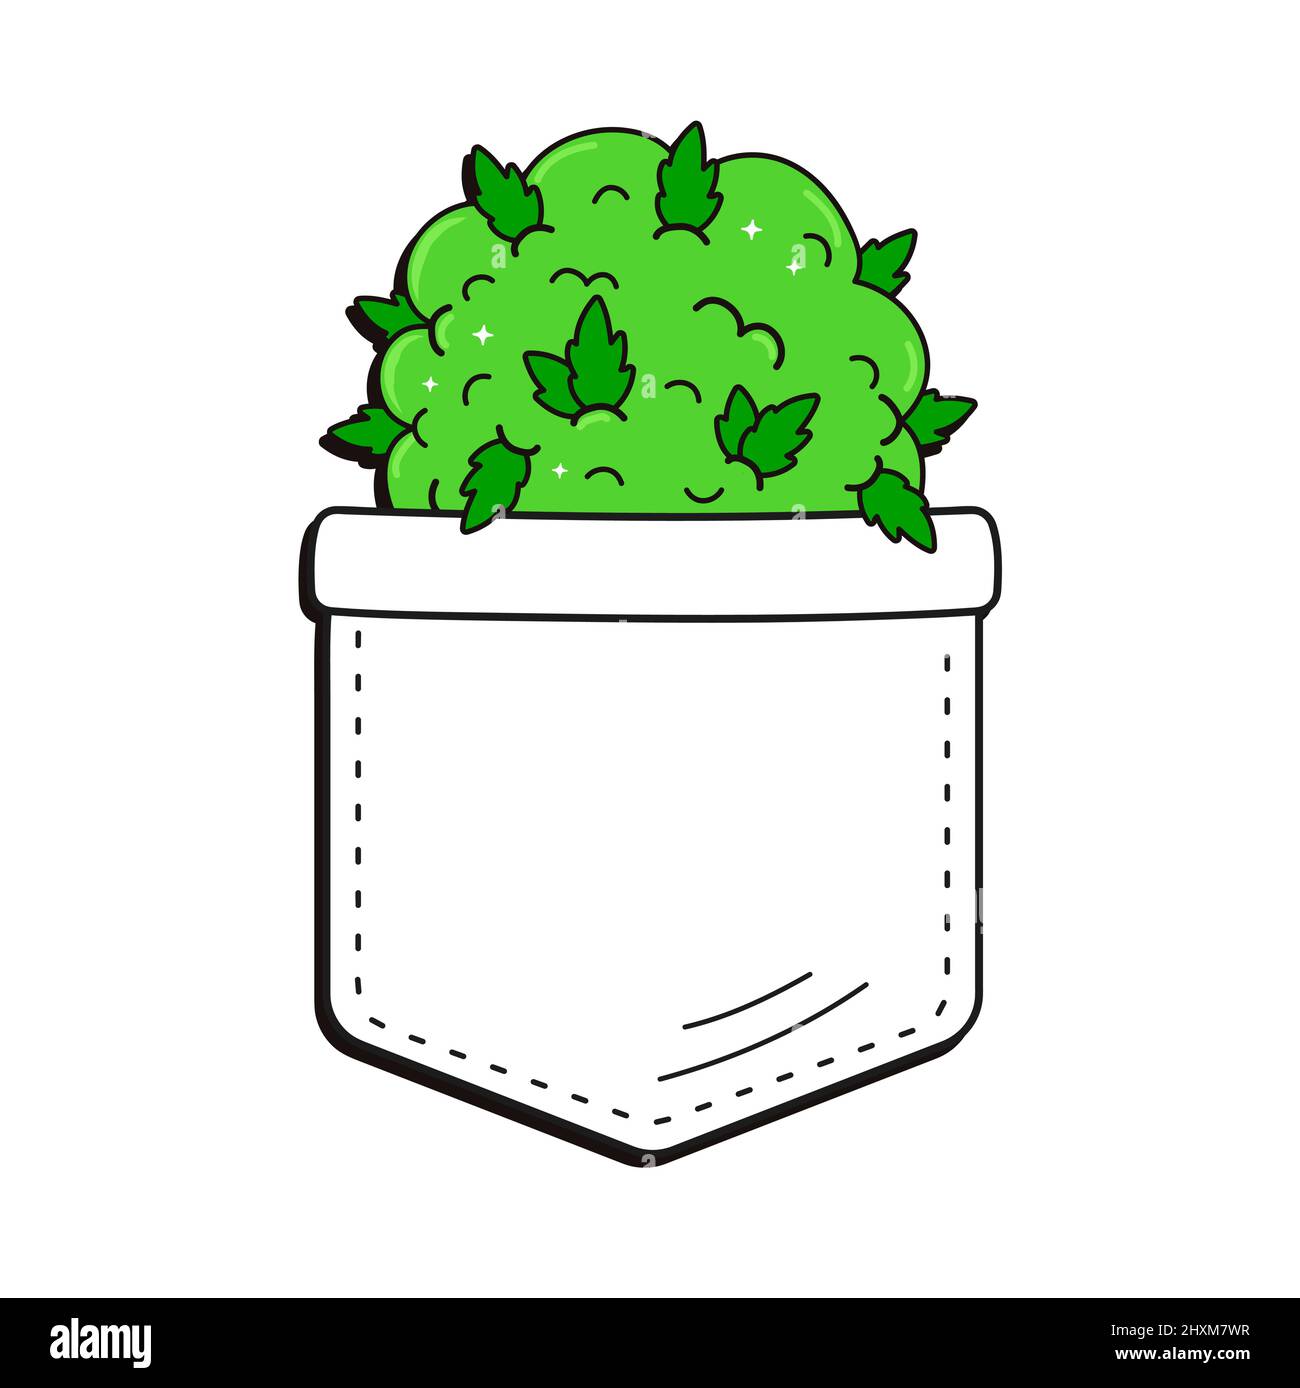 Unkraut Cannabis Knospe in Tasche T-Shirt-Print.Vektor Cartoon Doodle Linie  Stil Charakter Logo Illustration Design.isoliert auf weißem Hintergrund.  Marihuana-Unkrautdruck für Taschen-T-Shirt, Bekleidungskonzept  Stock-Vektorgrafik - Alamy